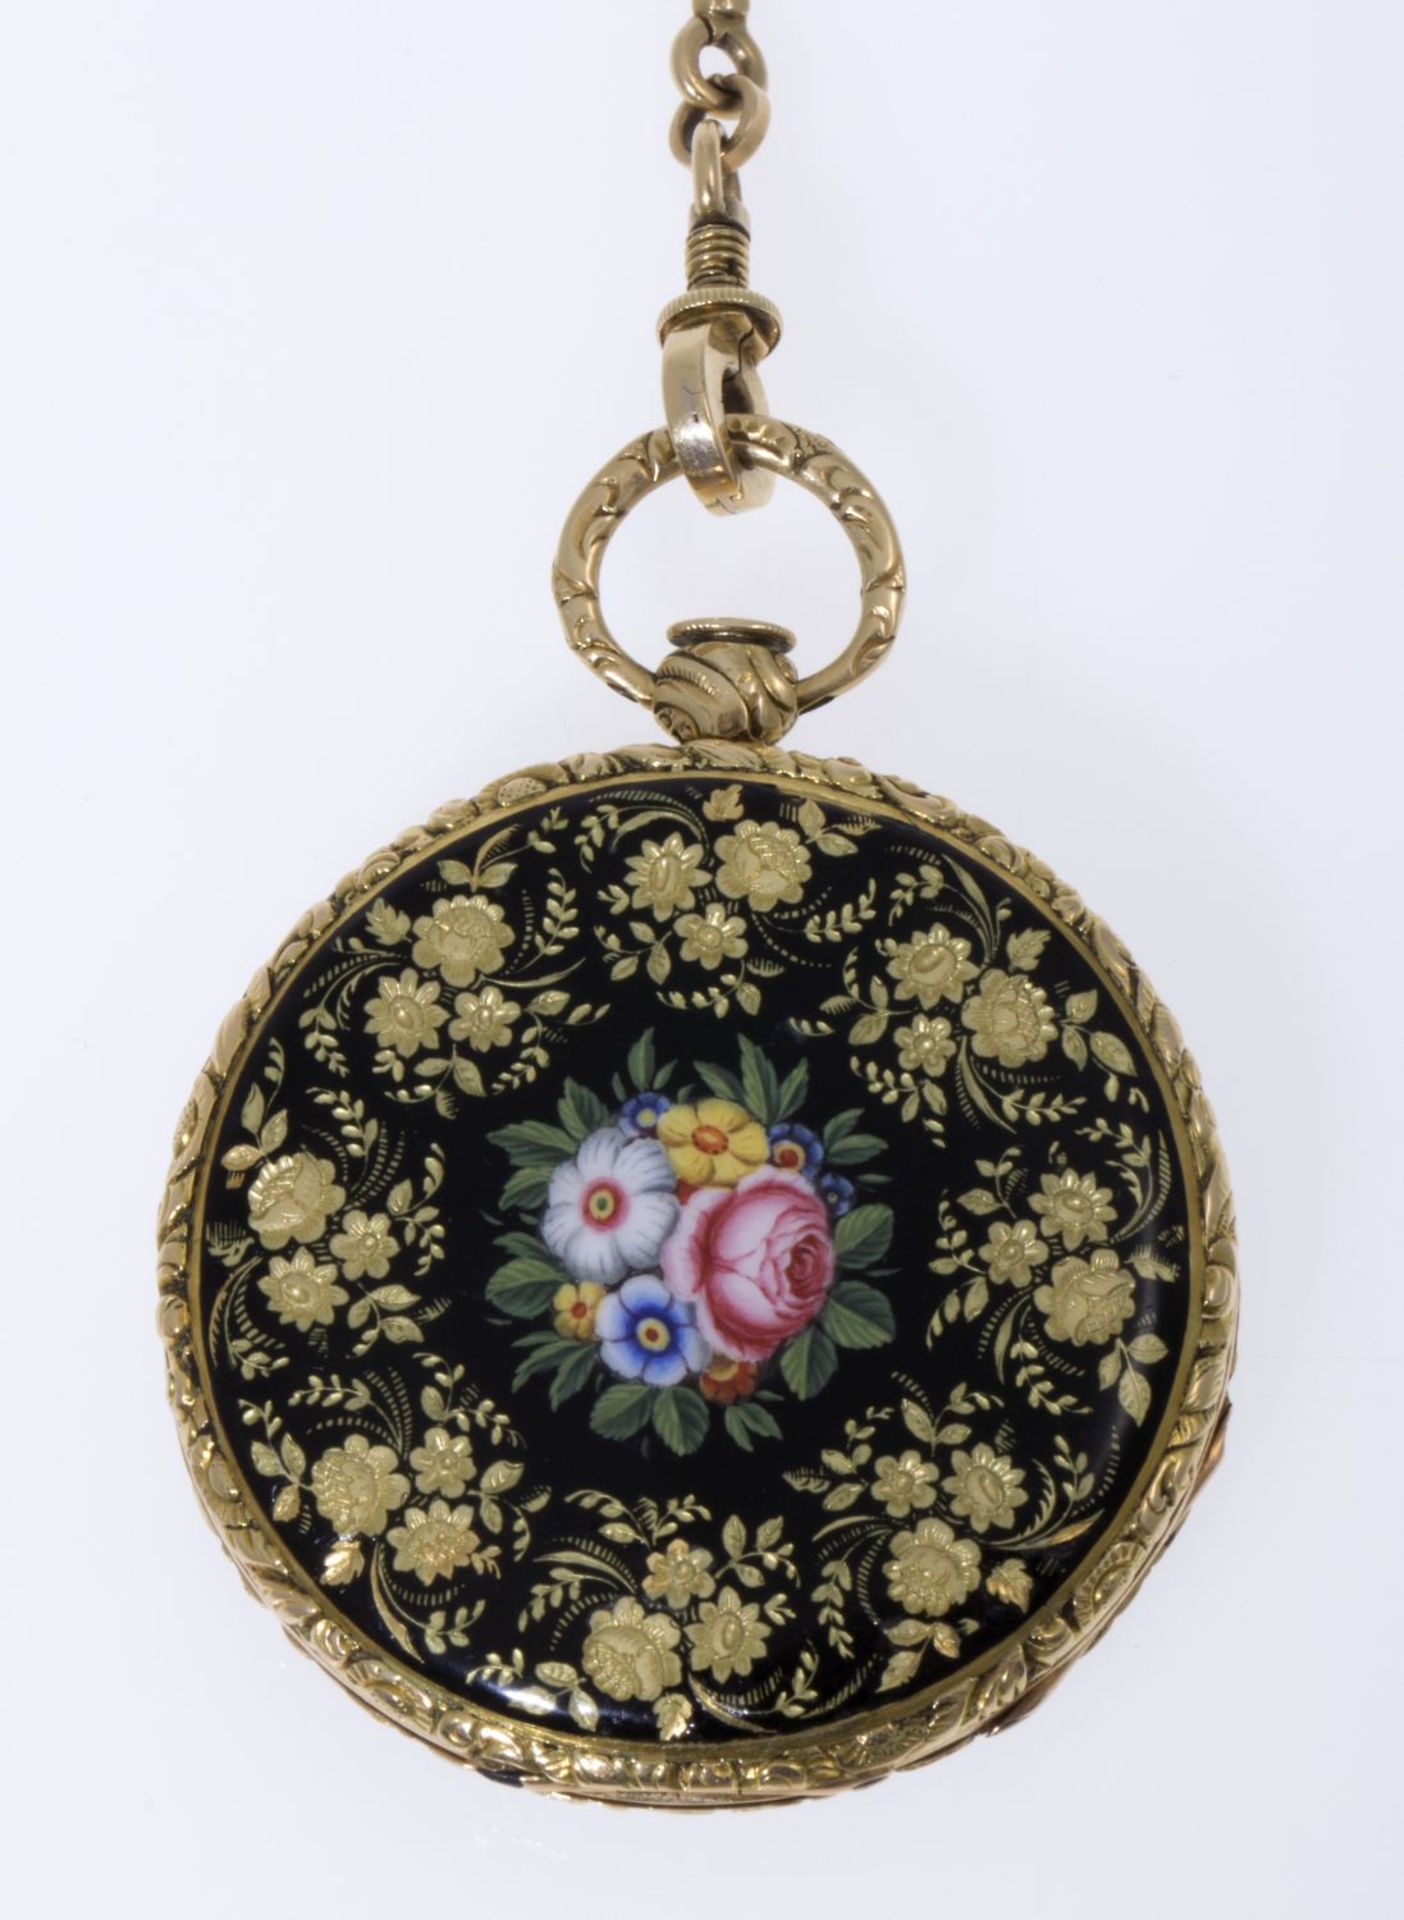 Dekorative Taschenuhr an UhrenketteGehäuse, Cuvette und Kette aus Gelbgold 750 (geprüft). Gehäuse - Bild 2 aus 6